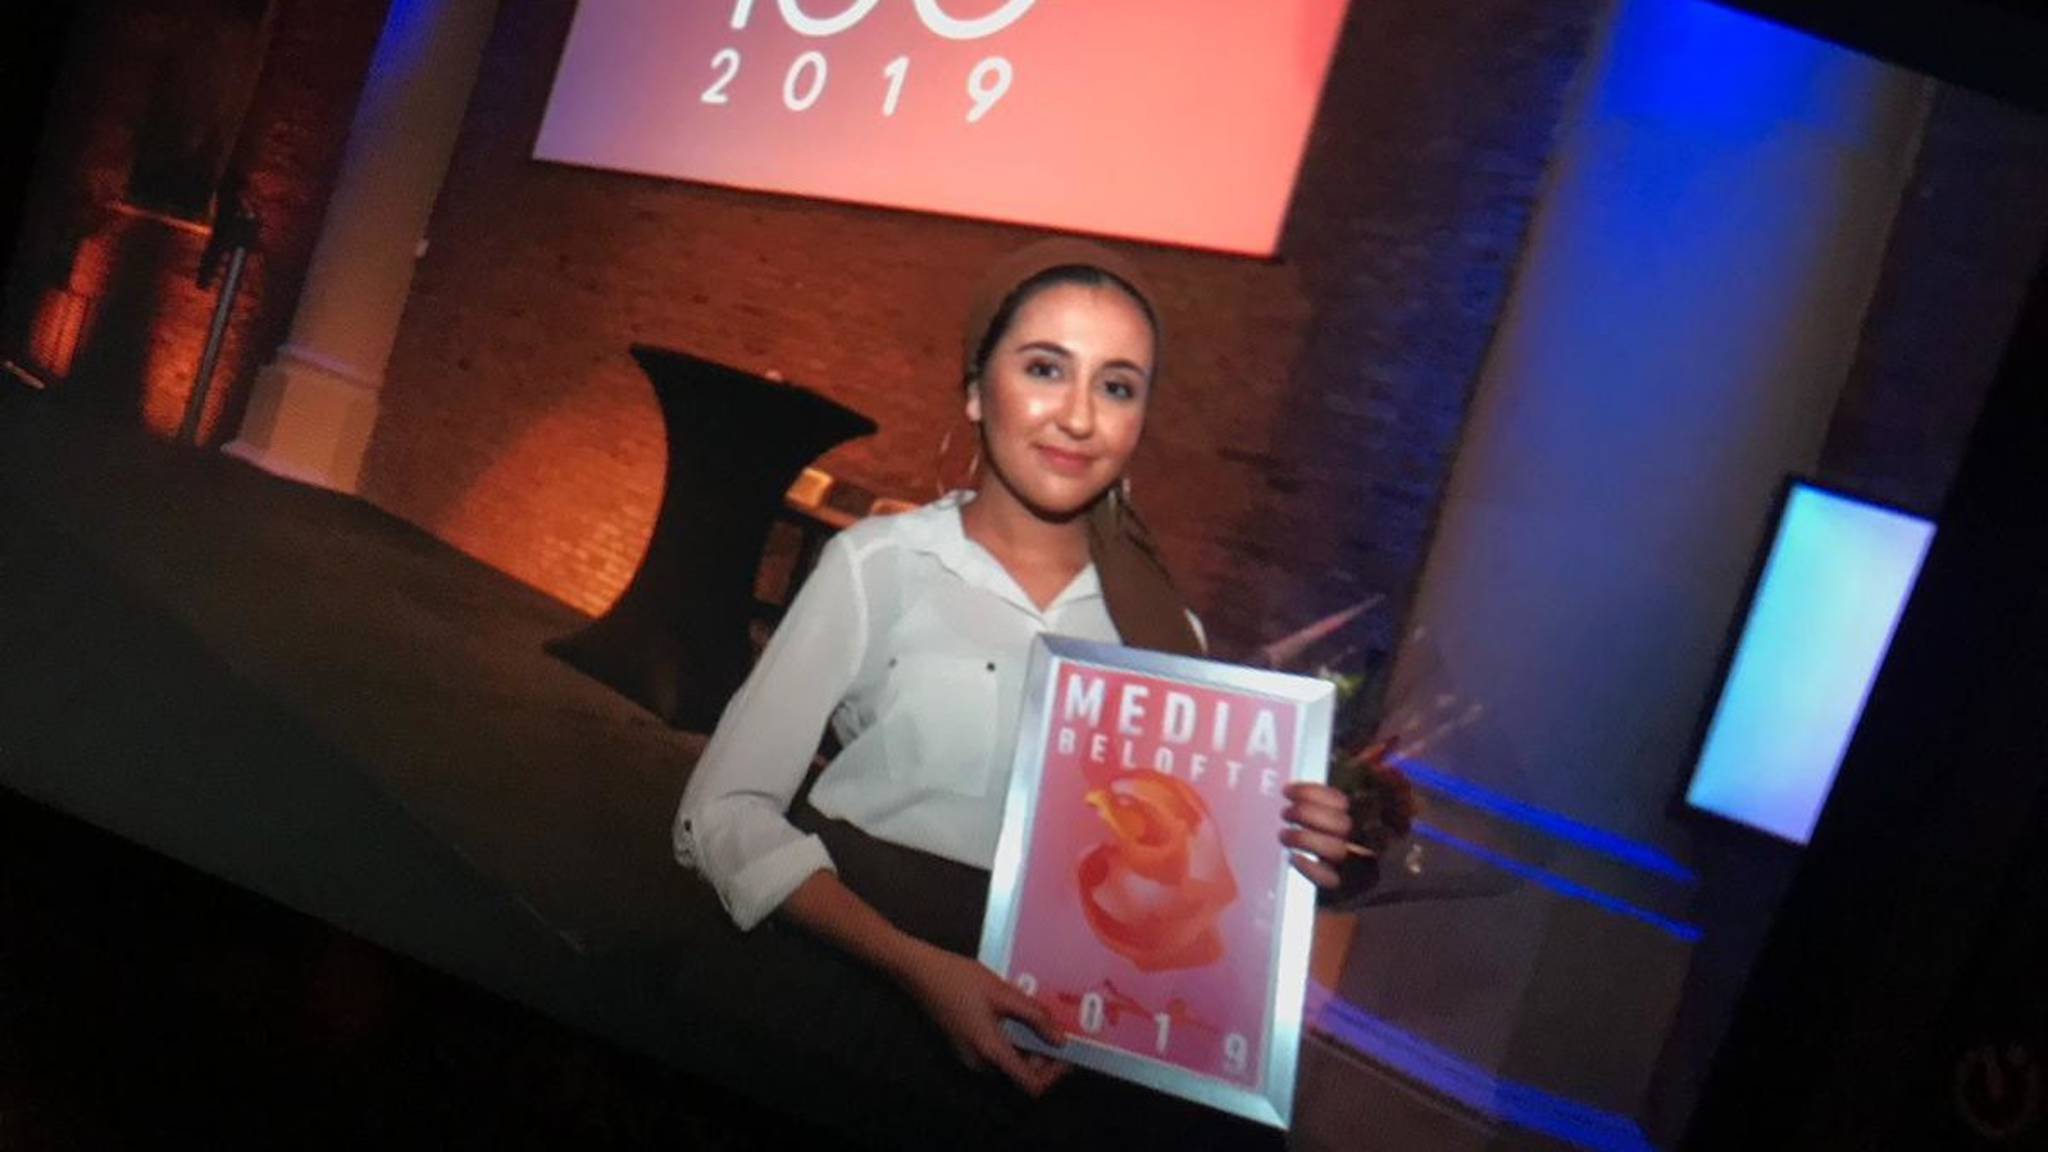 الريفية نسرين سهلا تفوز بجائزة الوعد الصحفى الهولندية لعام 2019.